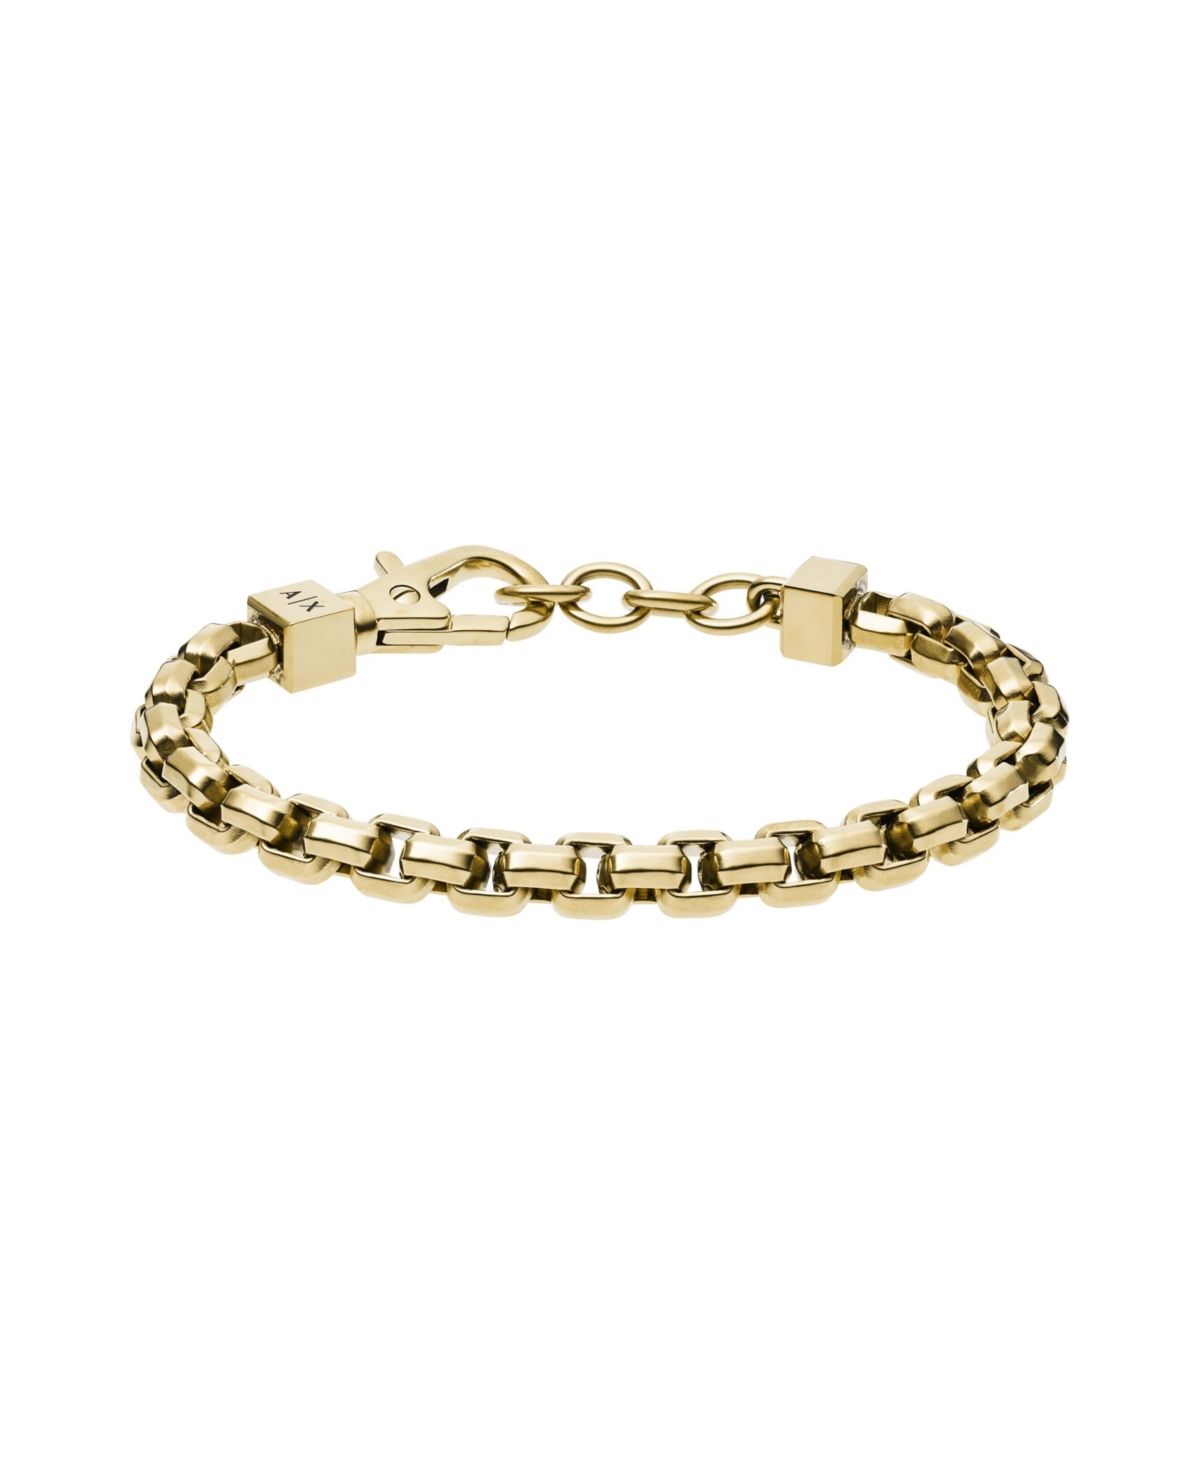 Men's Gold-Tone Stainless Steel Chain Bracelet - Gold